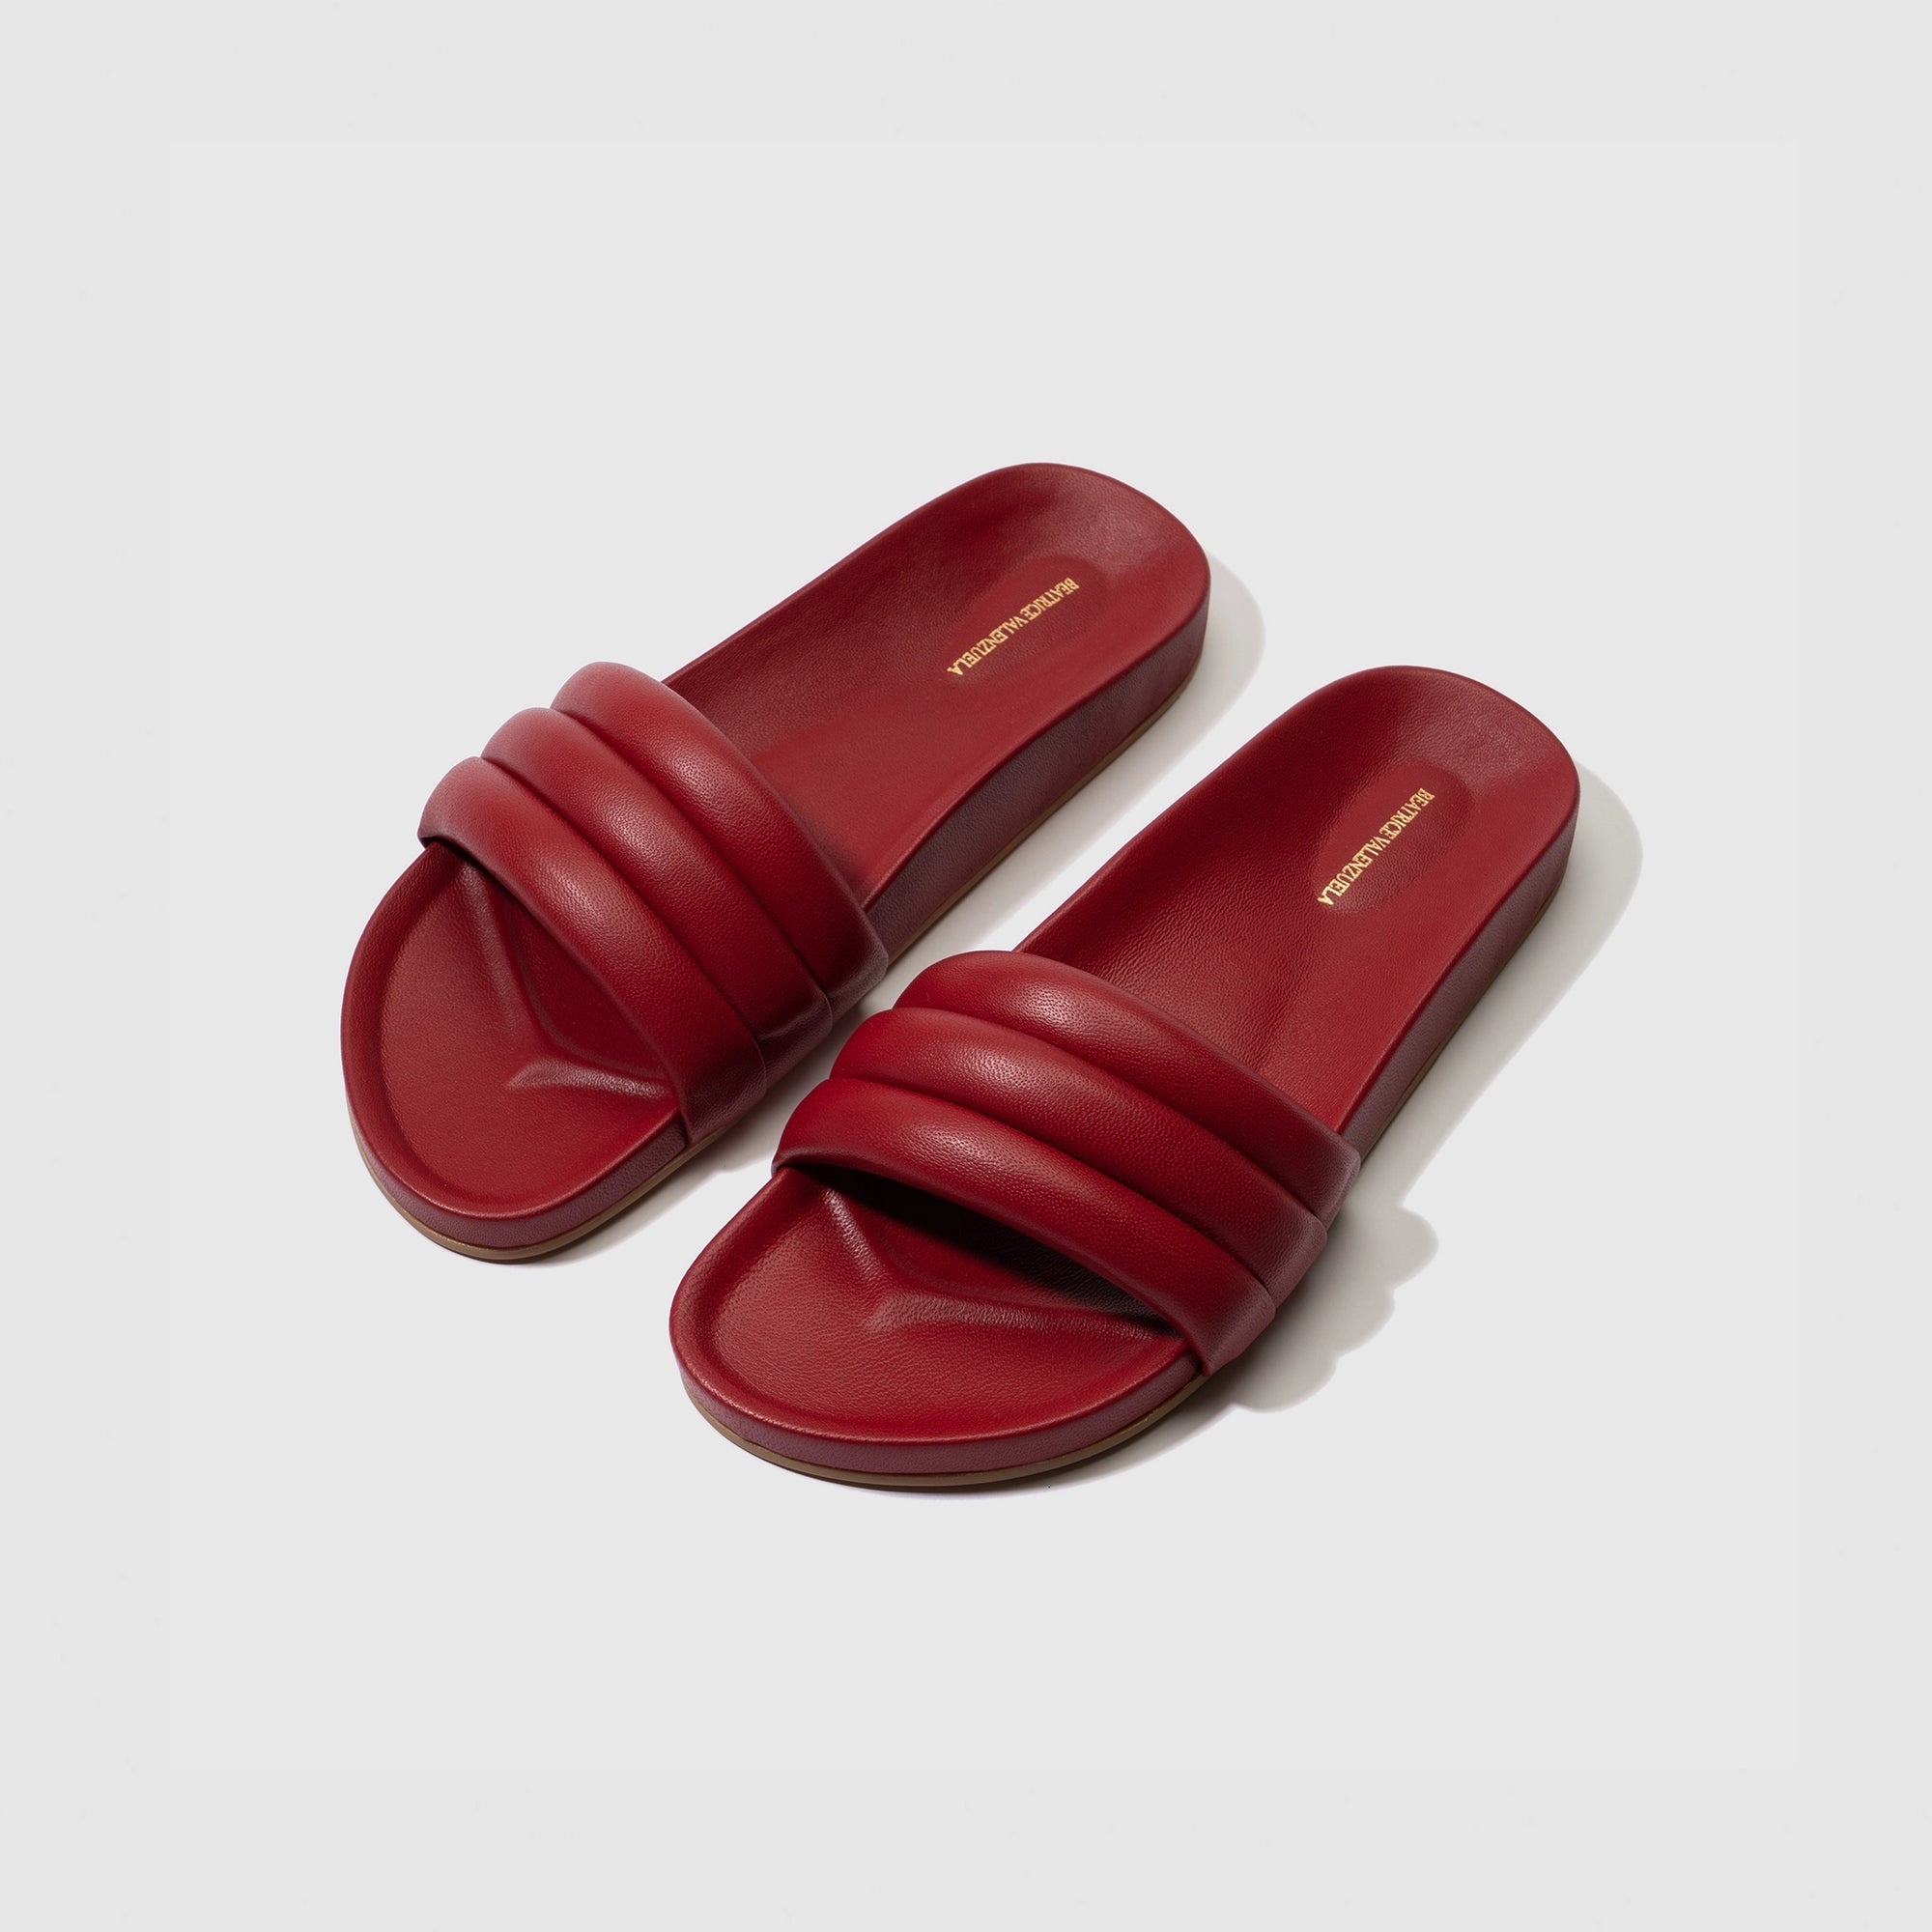 Shoes - Beatricevalenzuela.com